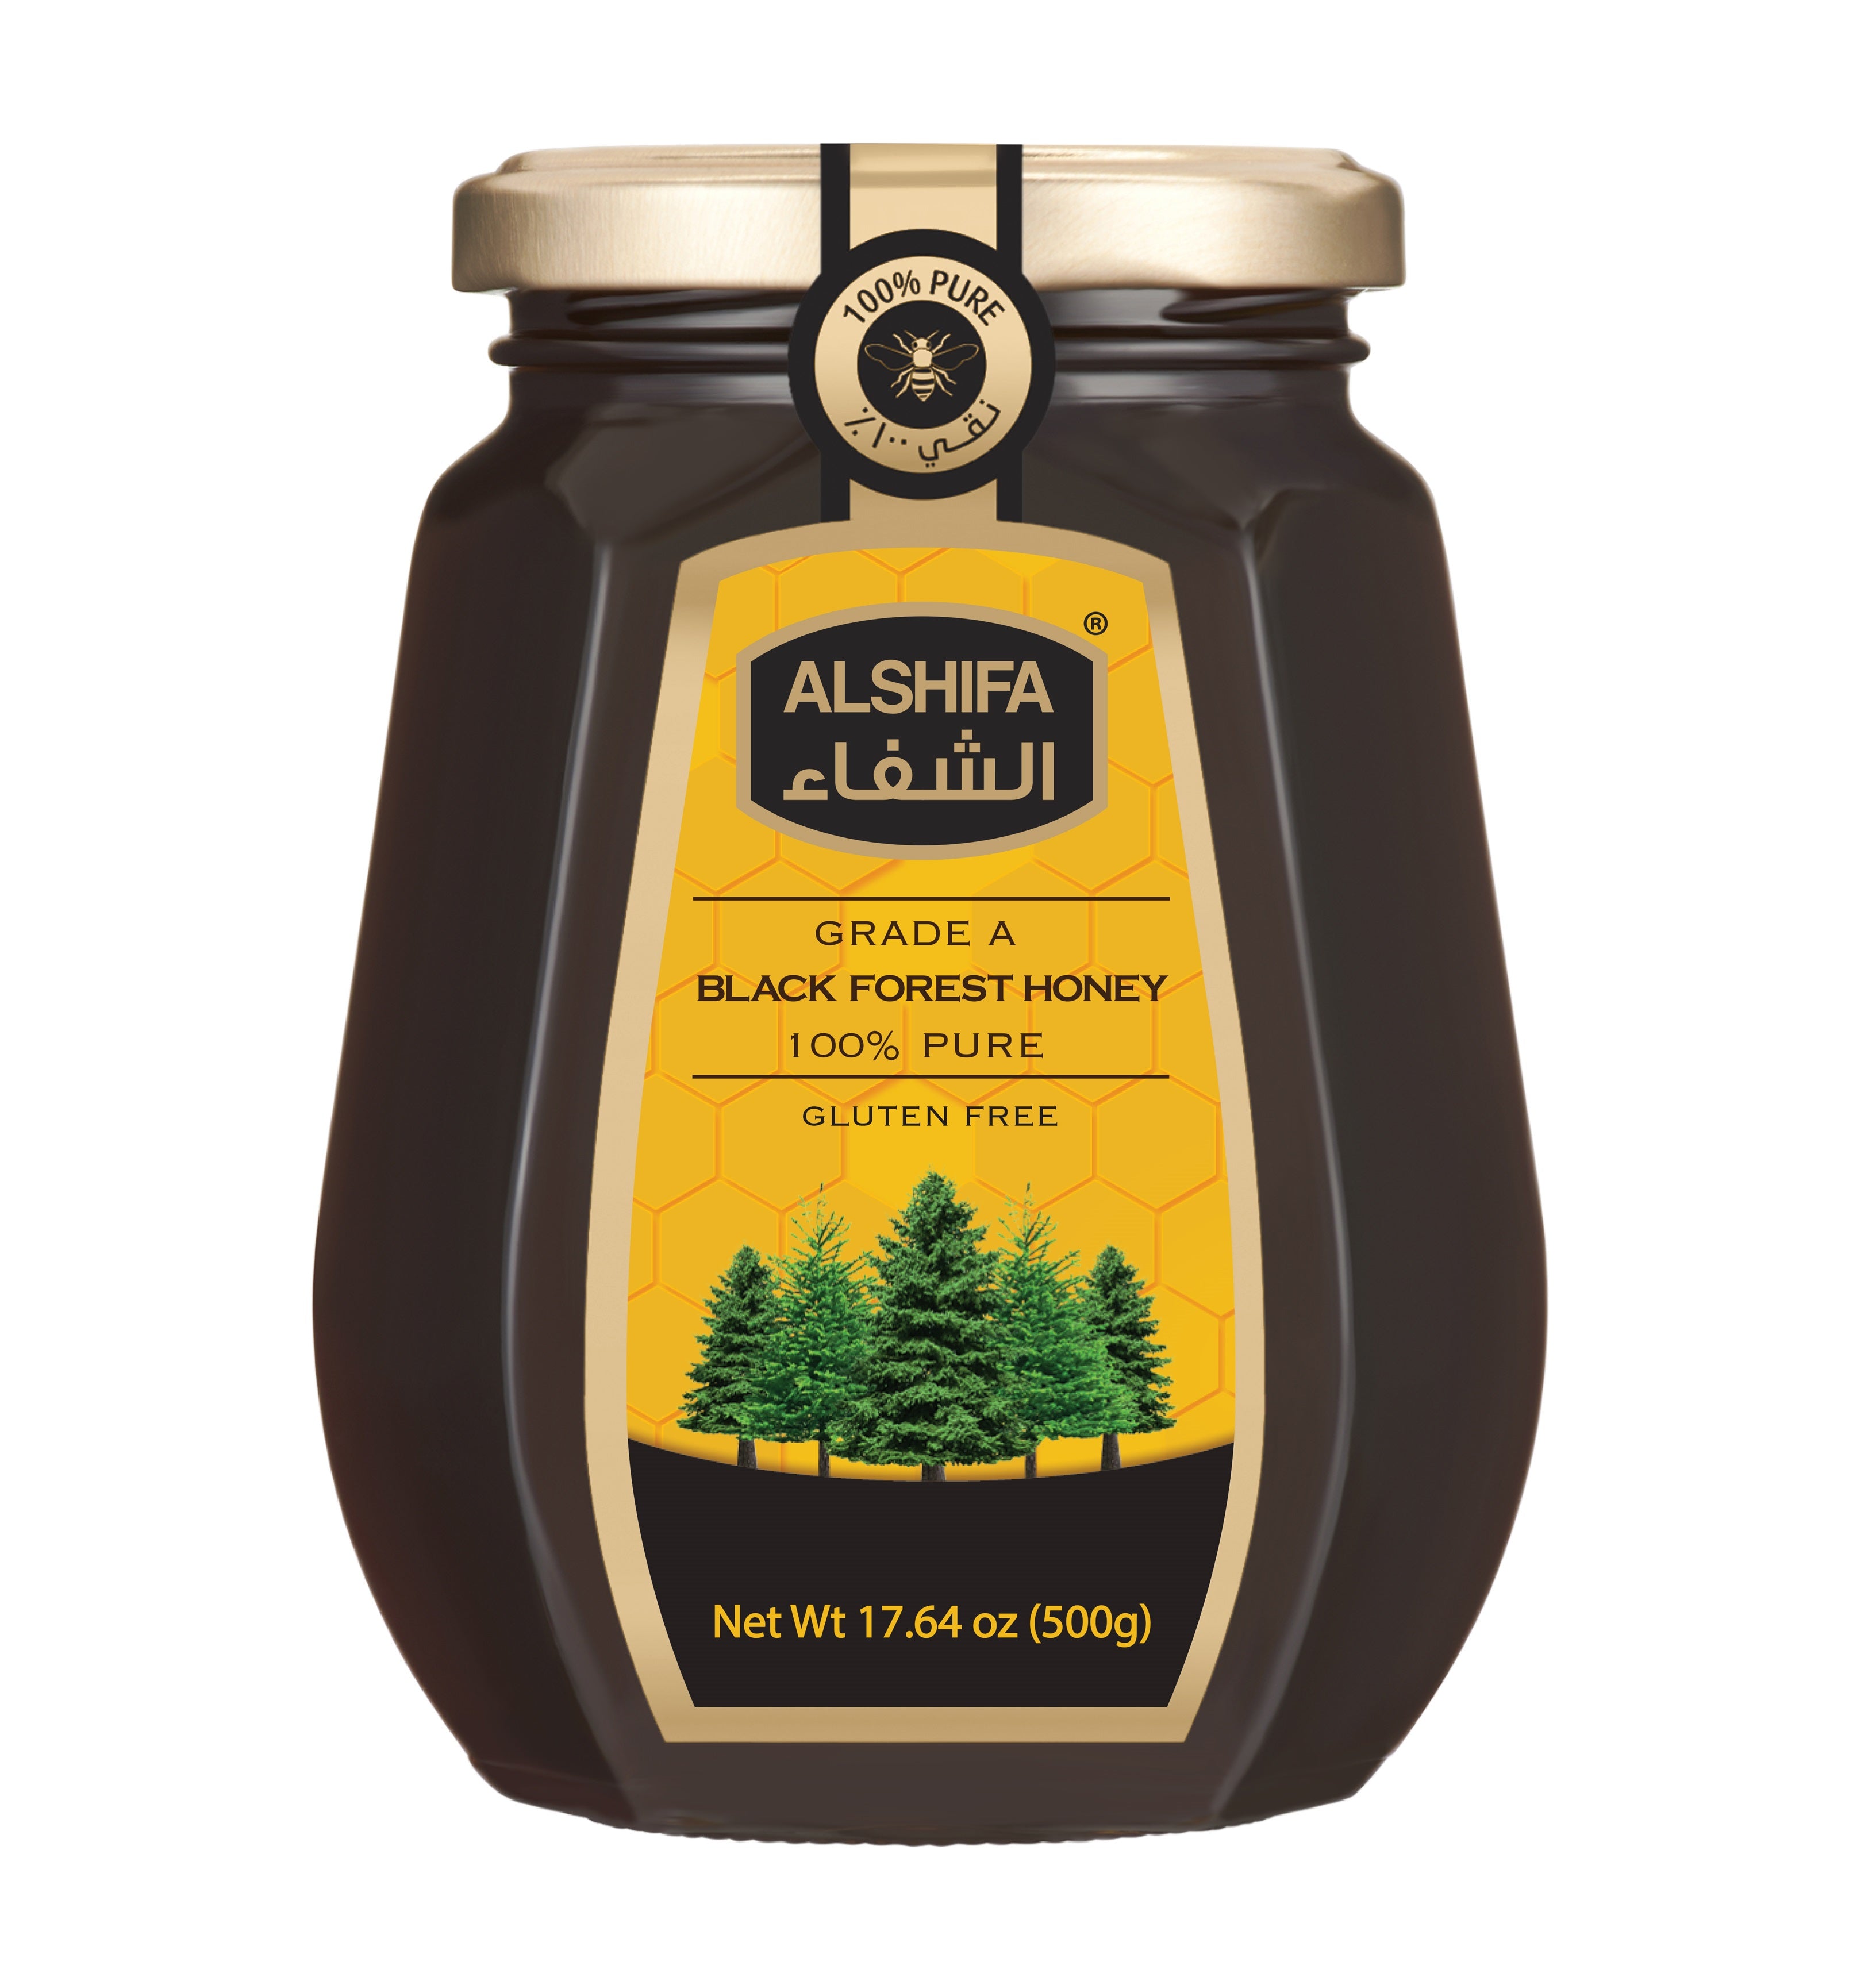 AlShifa Black Forest Honey - 500gm/12pk